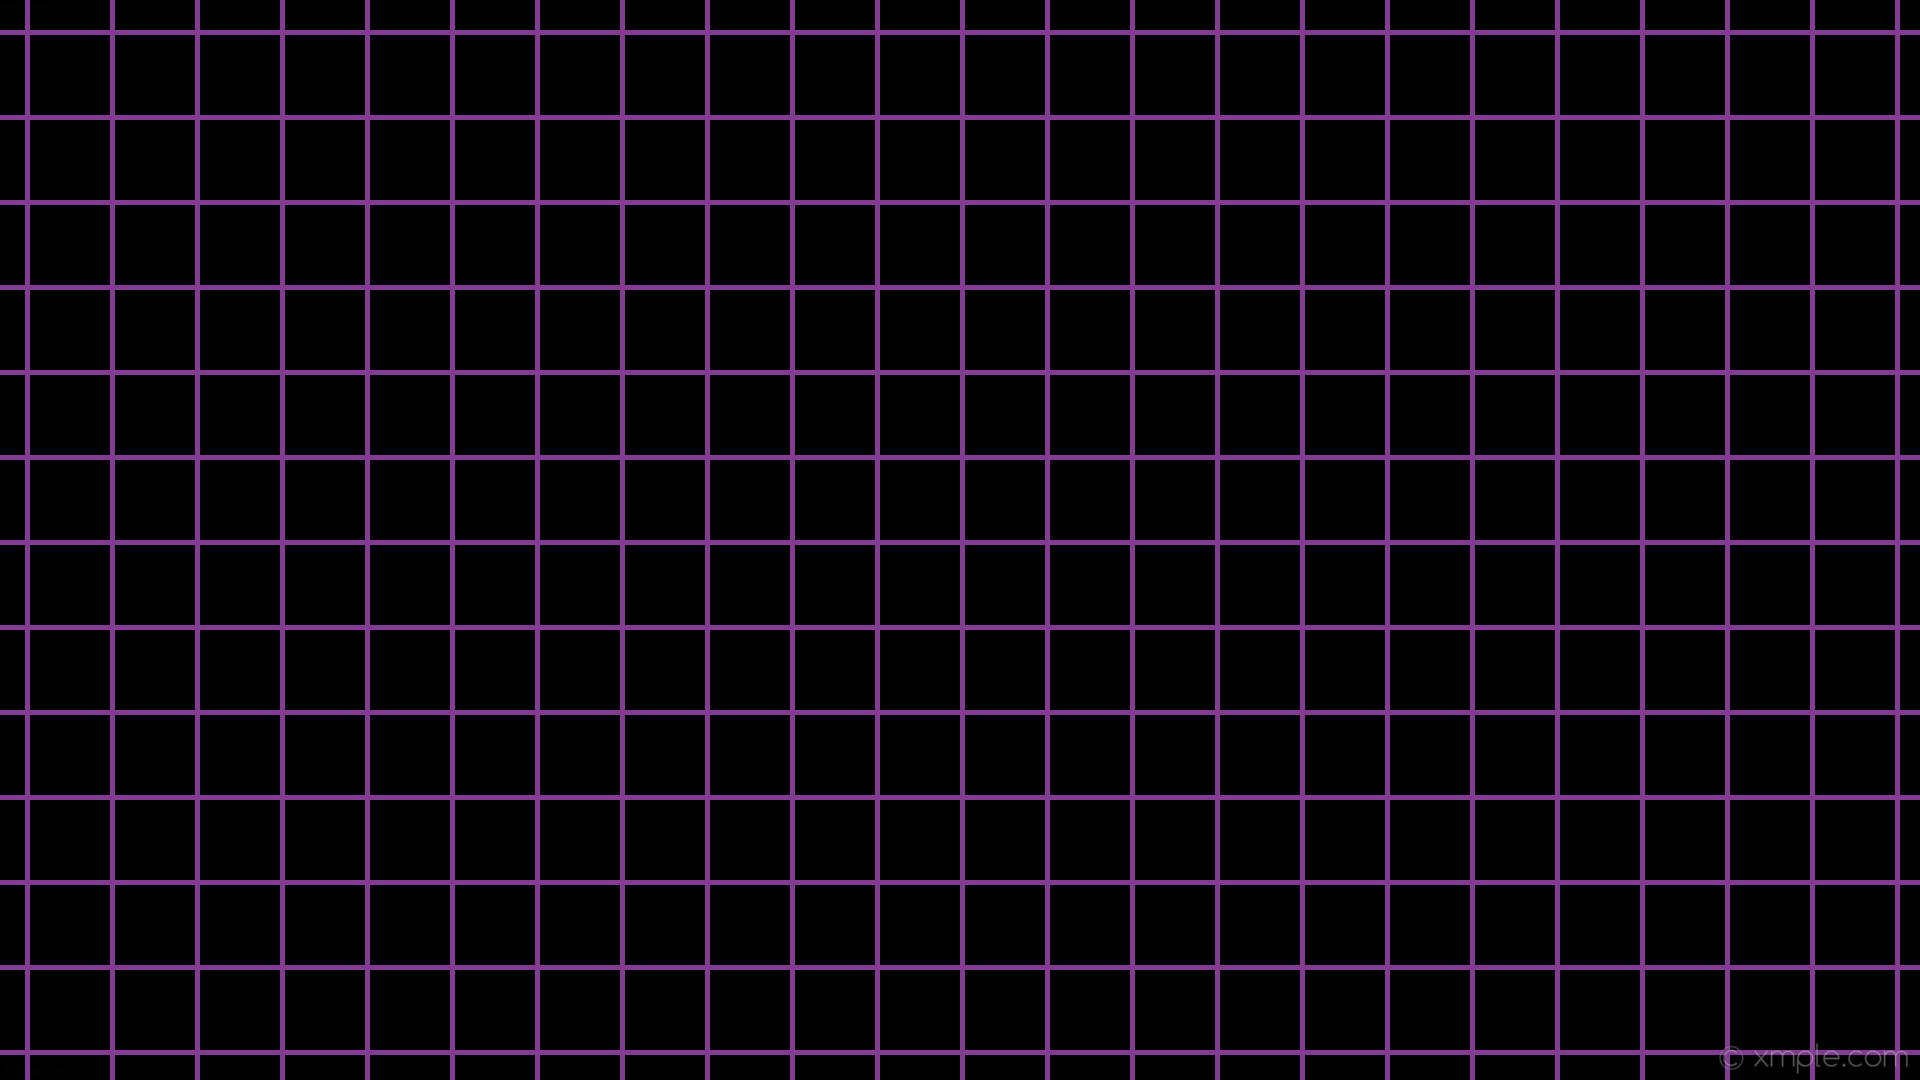 1920x1080 wallpaper graph paper black purple grid medium orchid #000000 #ba55d3 0Â°  5px 85px